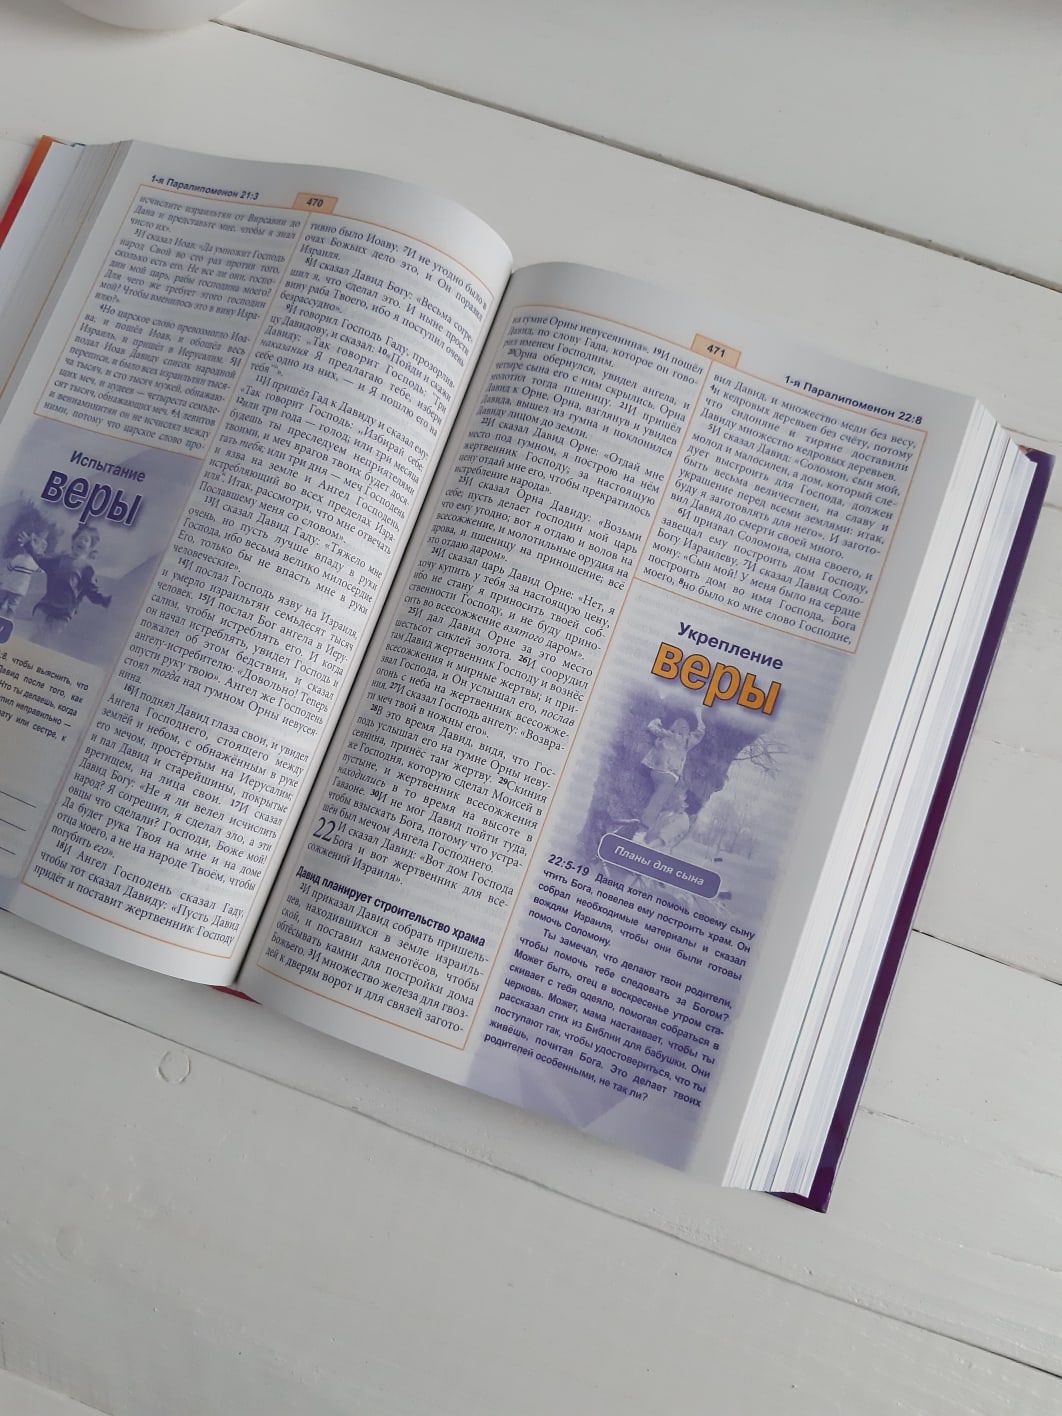 Библия для детей с комментариями Джона Мак-Артура (красочное издание, для подростков, с цветными вставками про дружбу, честность, любовт и тп.)